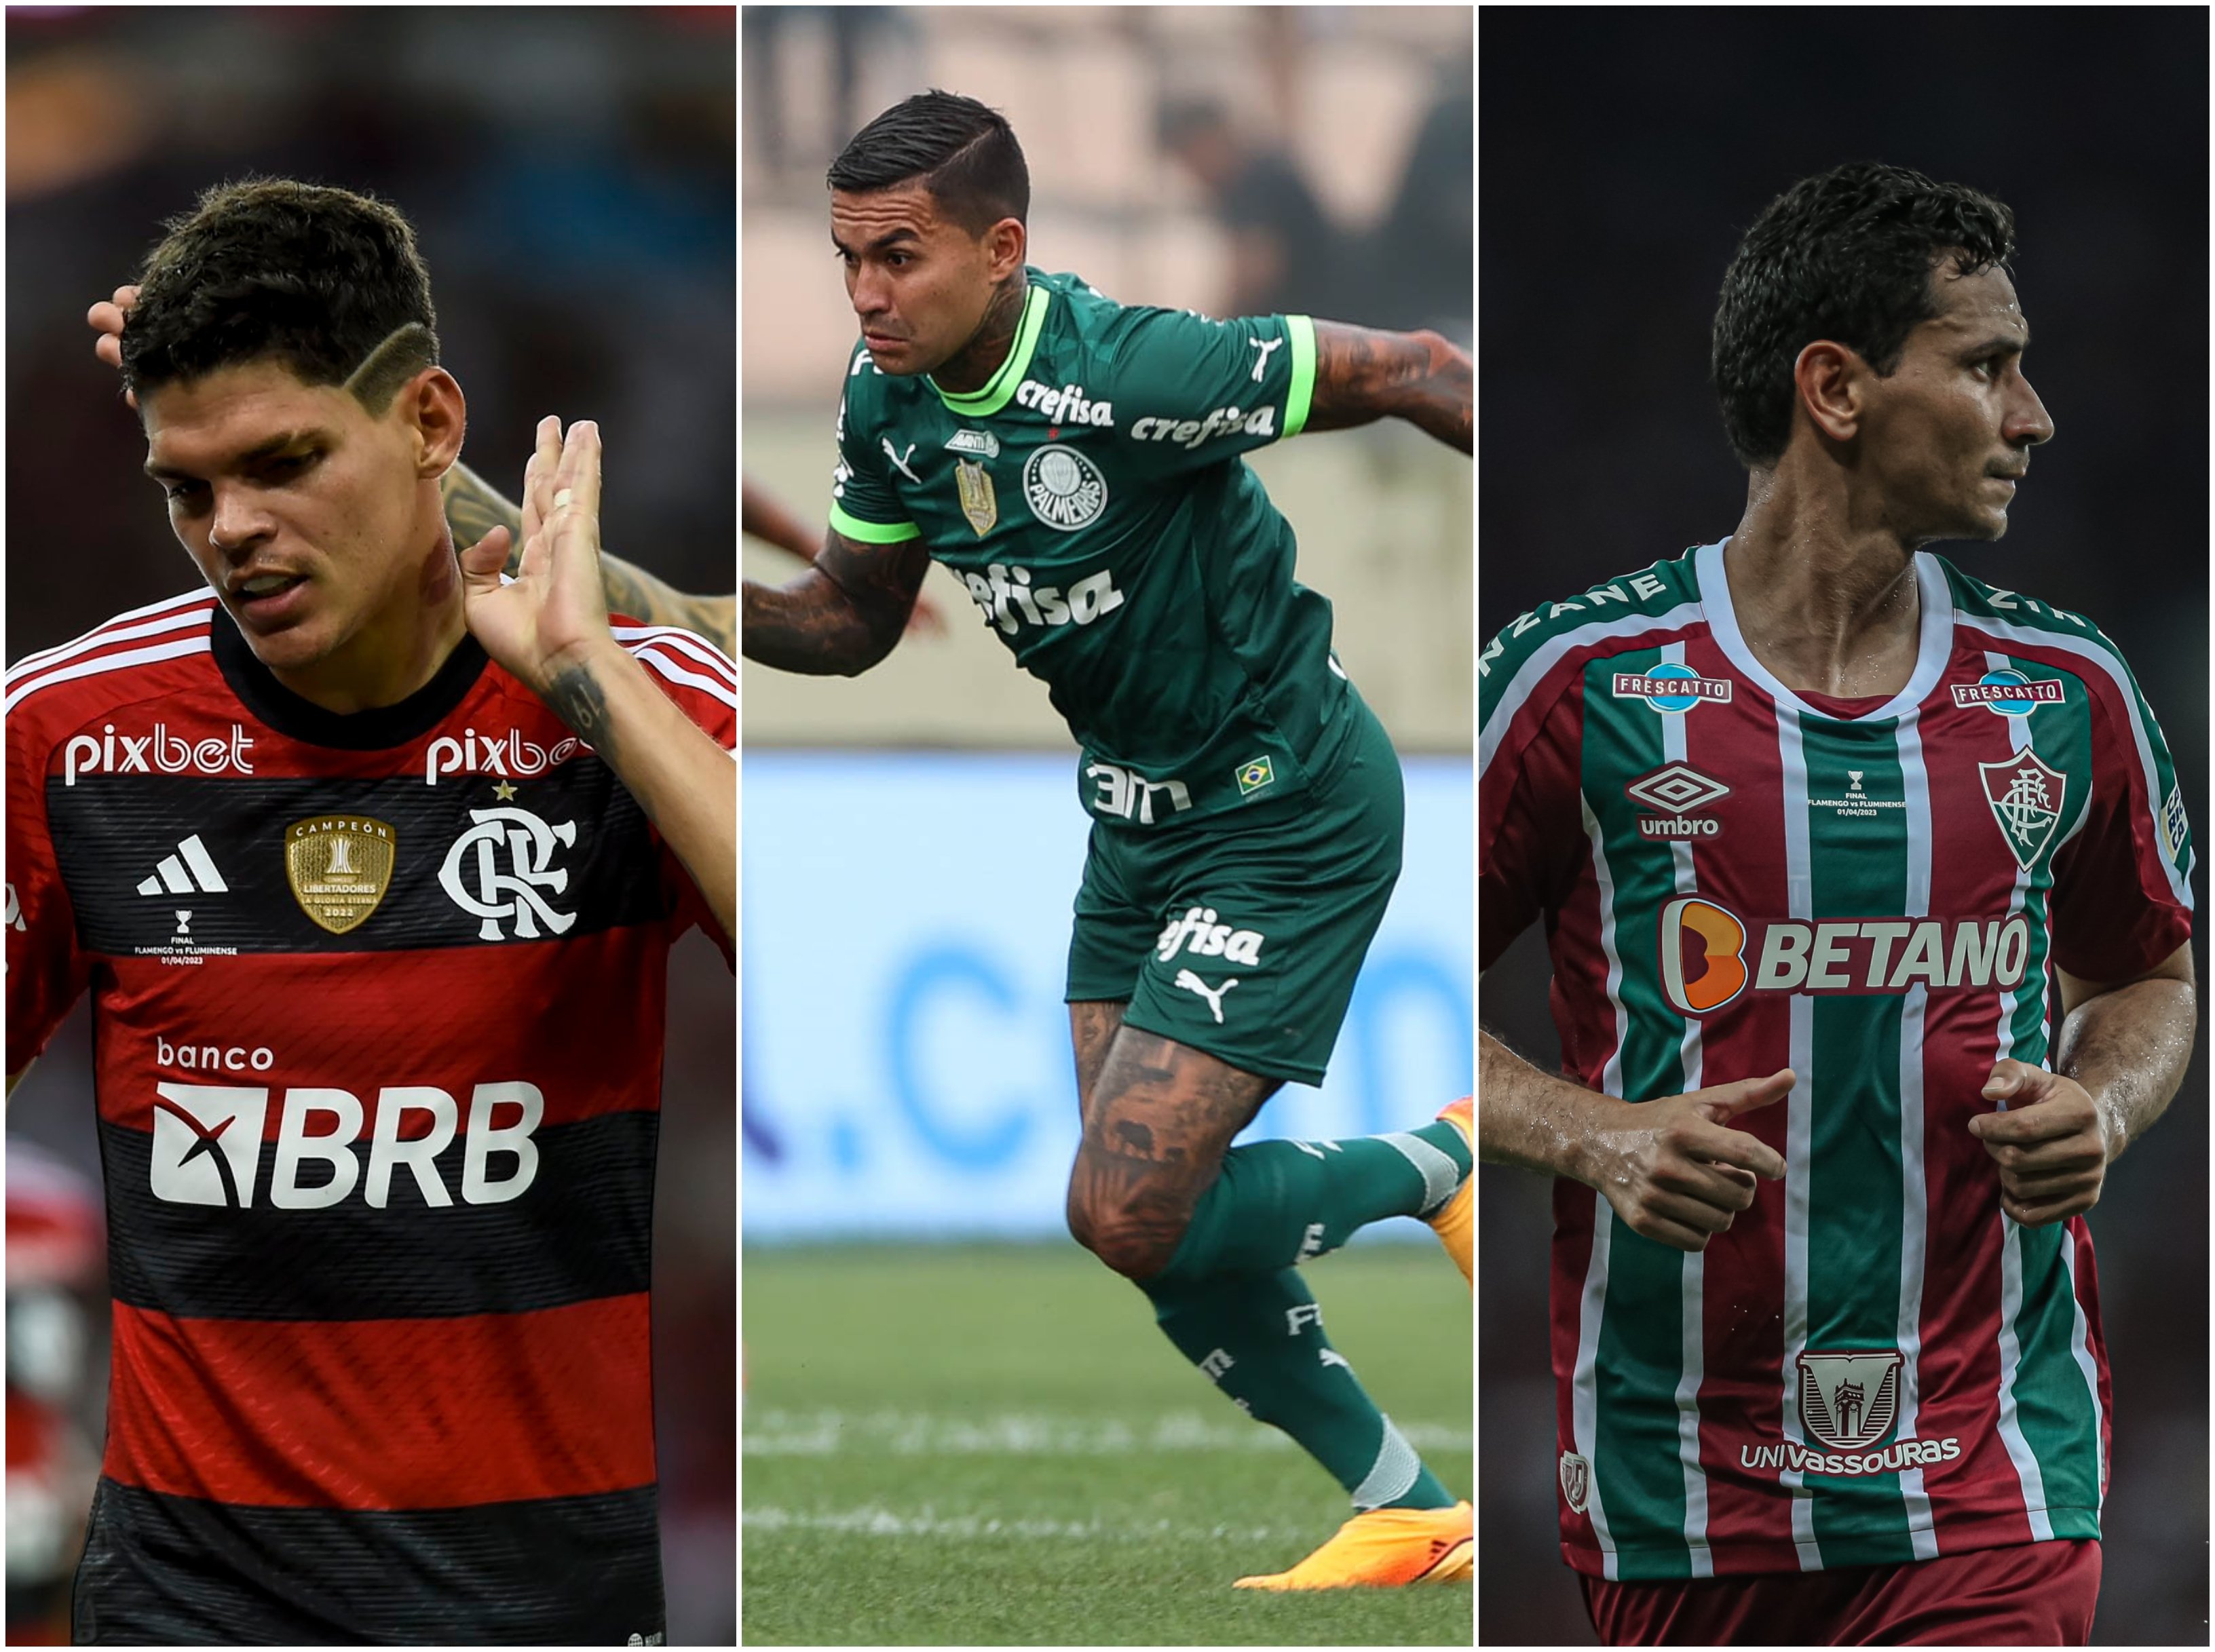 Oitavas de final Copa Libertadores - Favoritos Betano